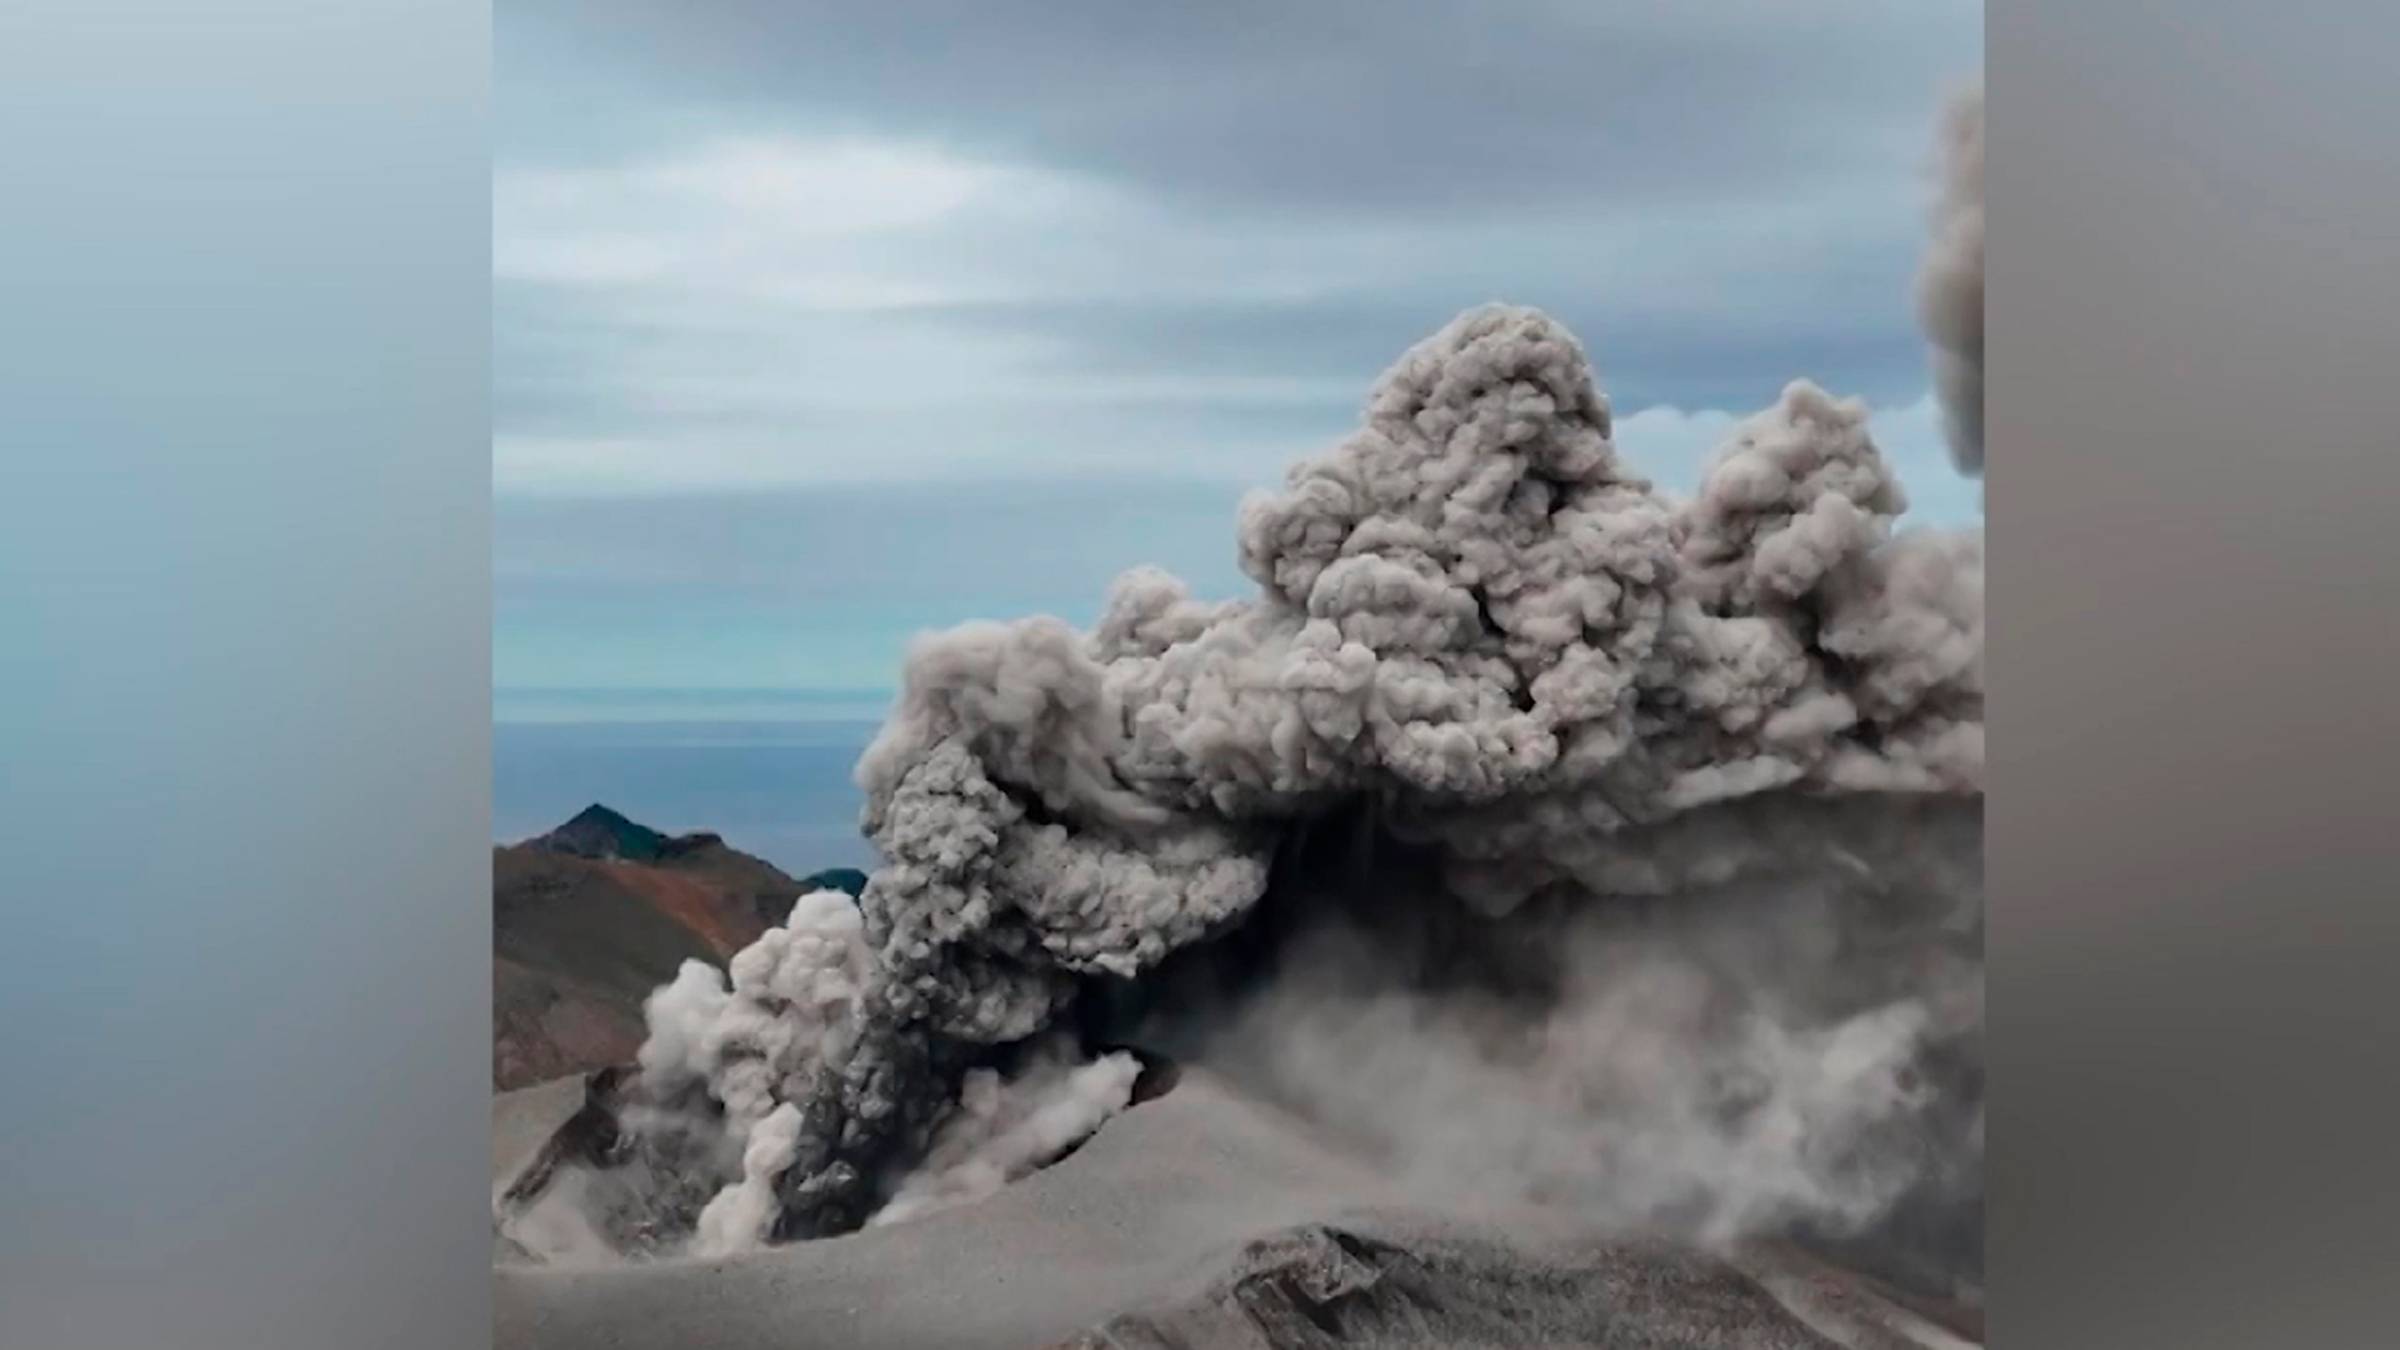 Эбеко извергается на острове Парамушир. Высота выброса достигла 2,5 метров над уровнем моря